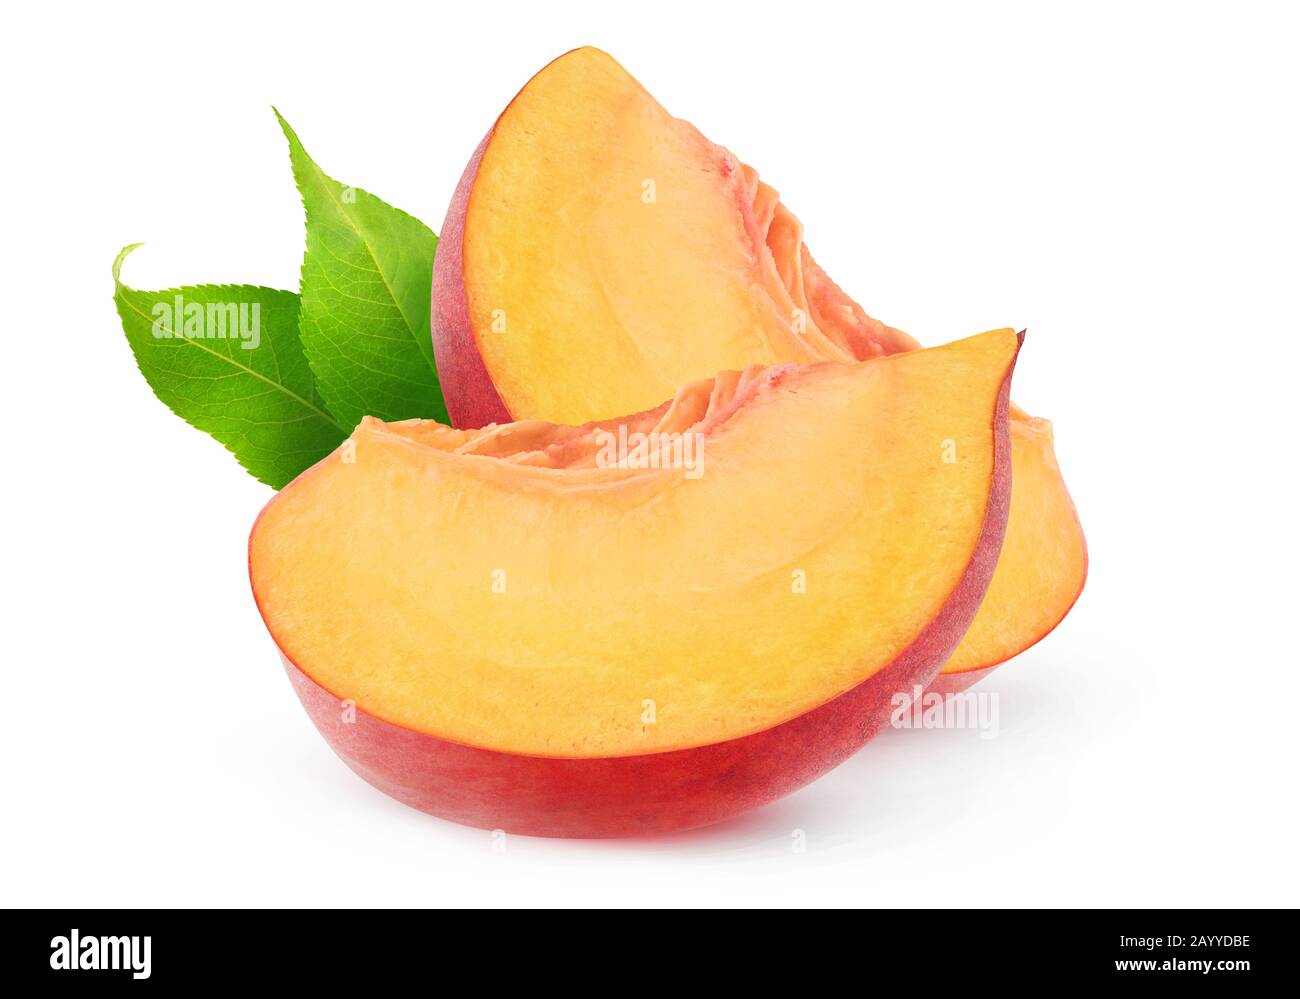 Isolierte Pfirsich-Fruchtscheiben. Zwei Stücke Pfirsiche isoliert auf weißem Hintergrund mit Beschneidungspfad Stockfoto